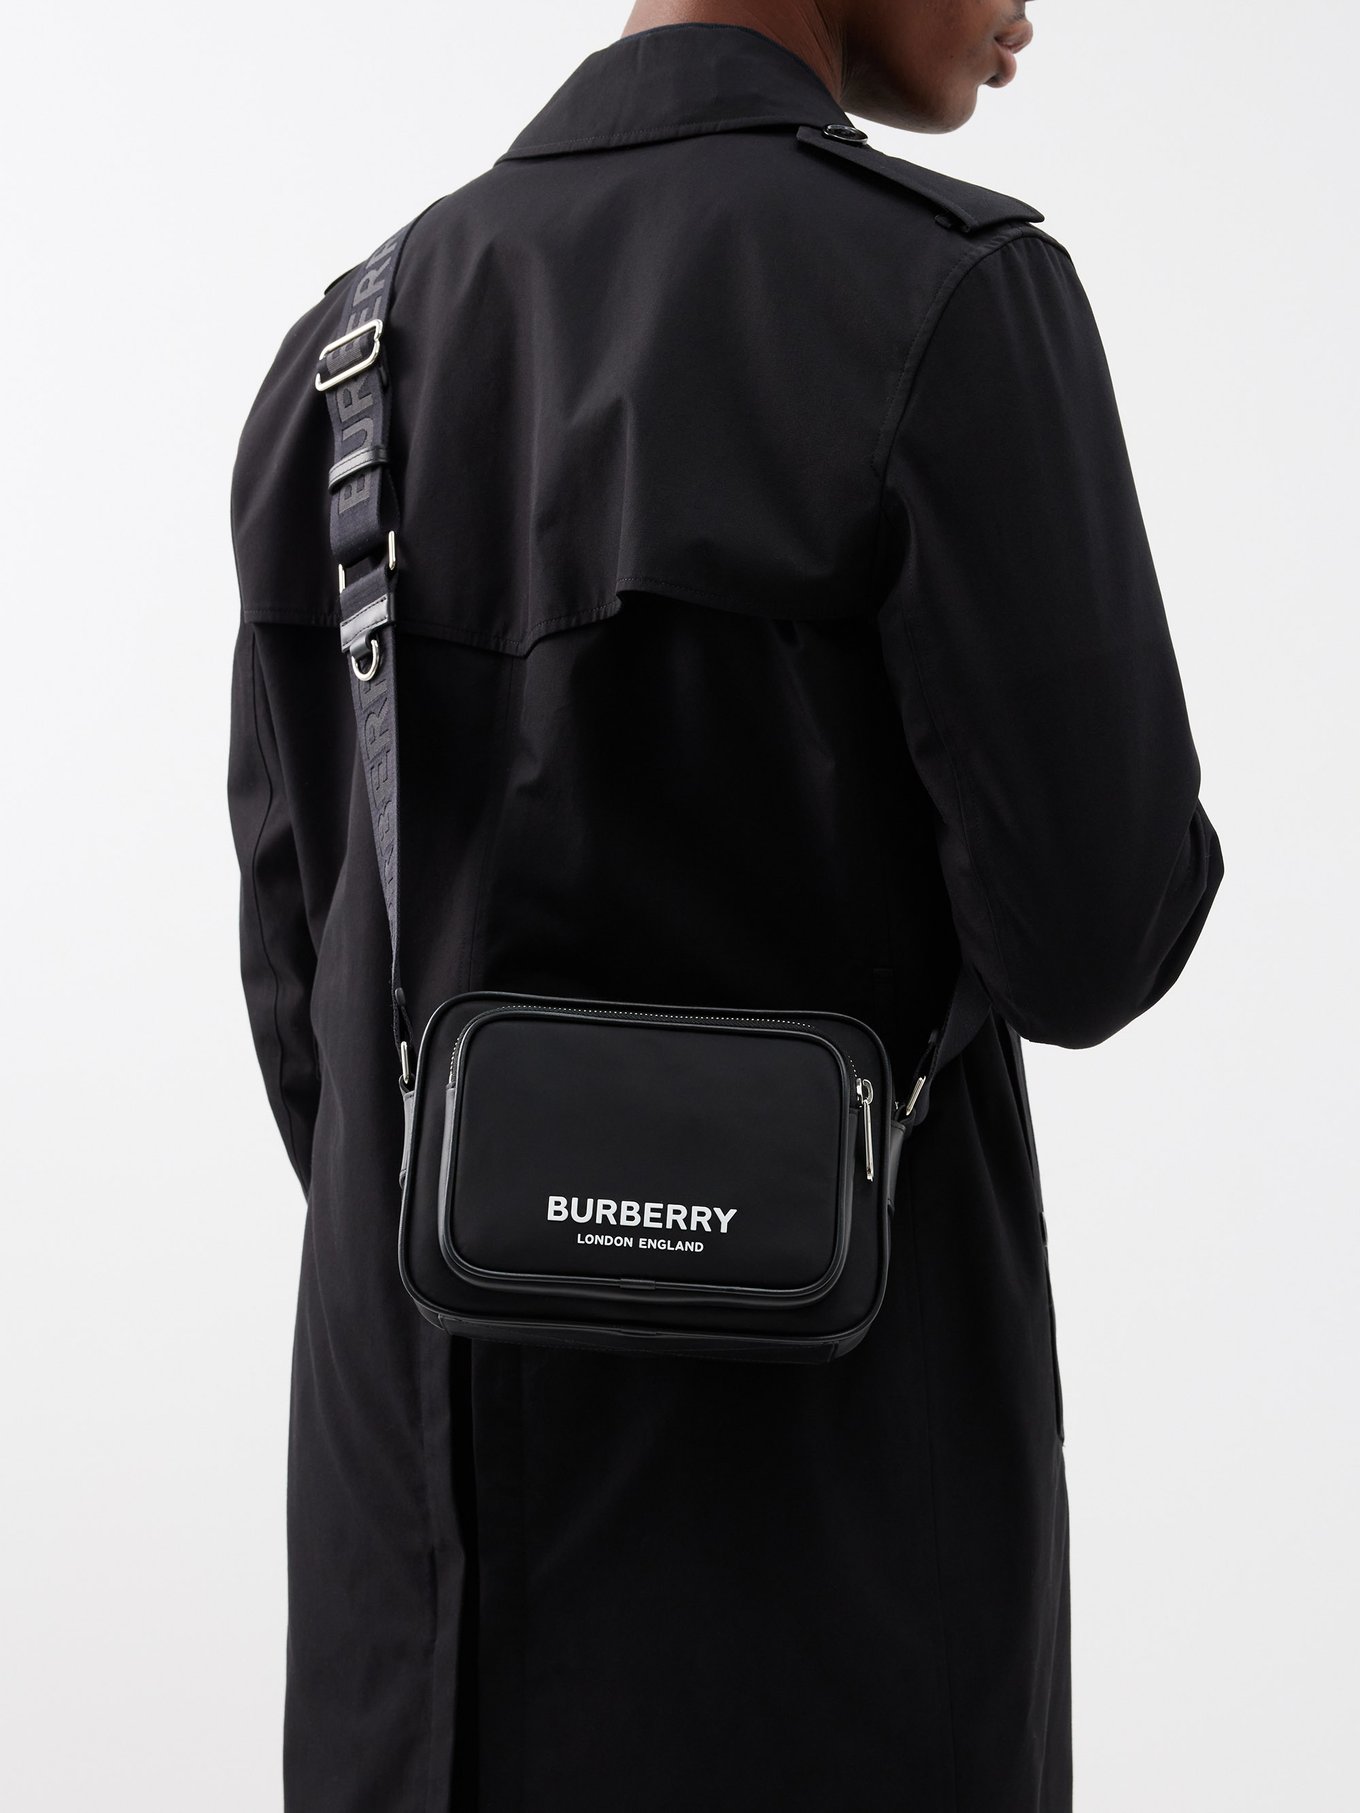 Paul Smith Camera Shoulder Bag - Black for Men